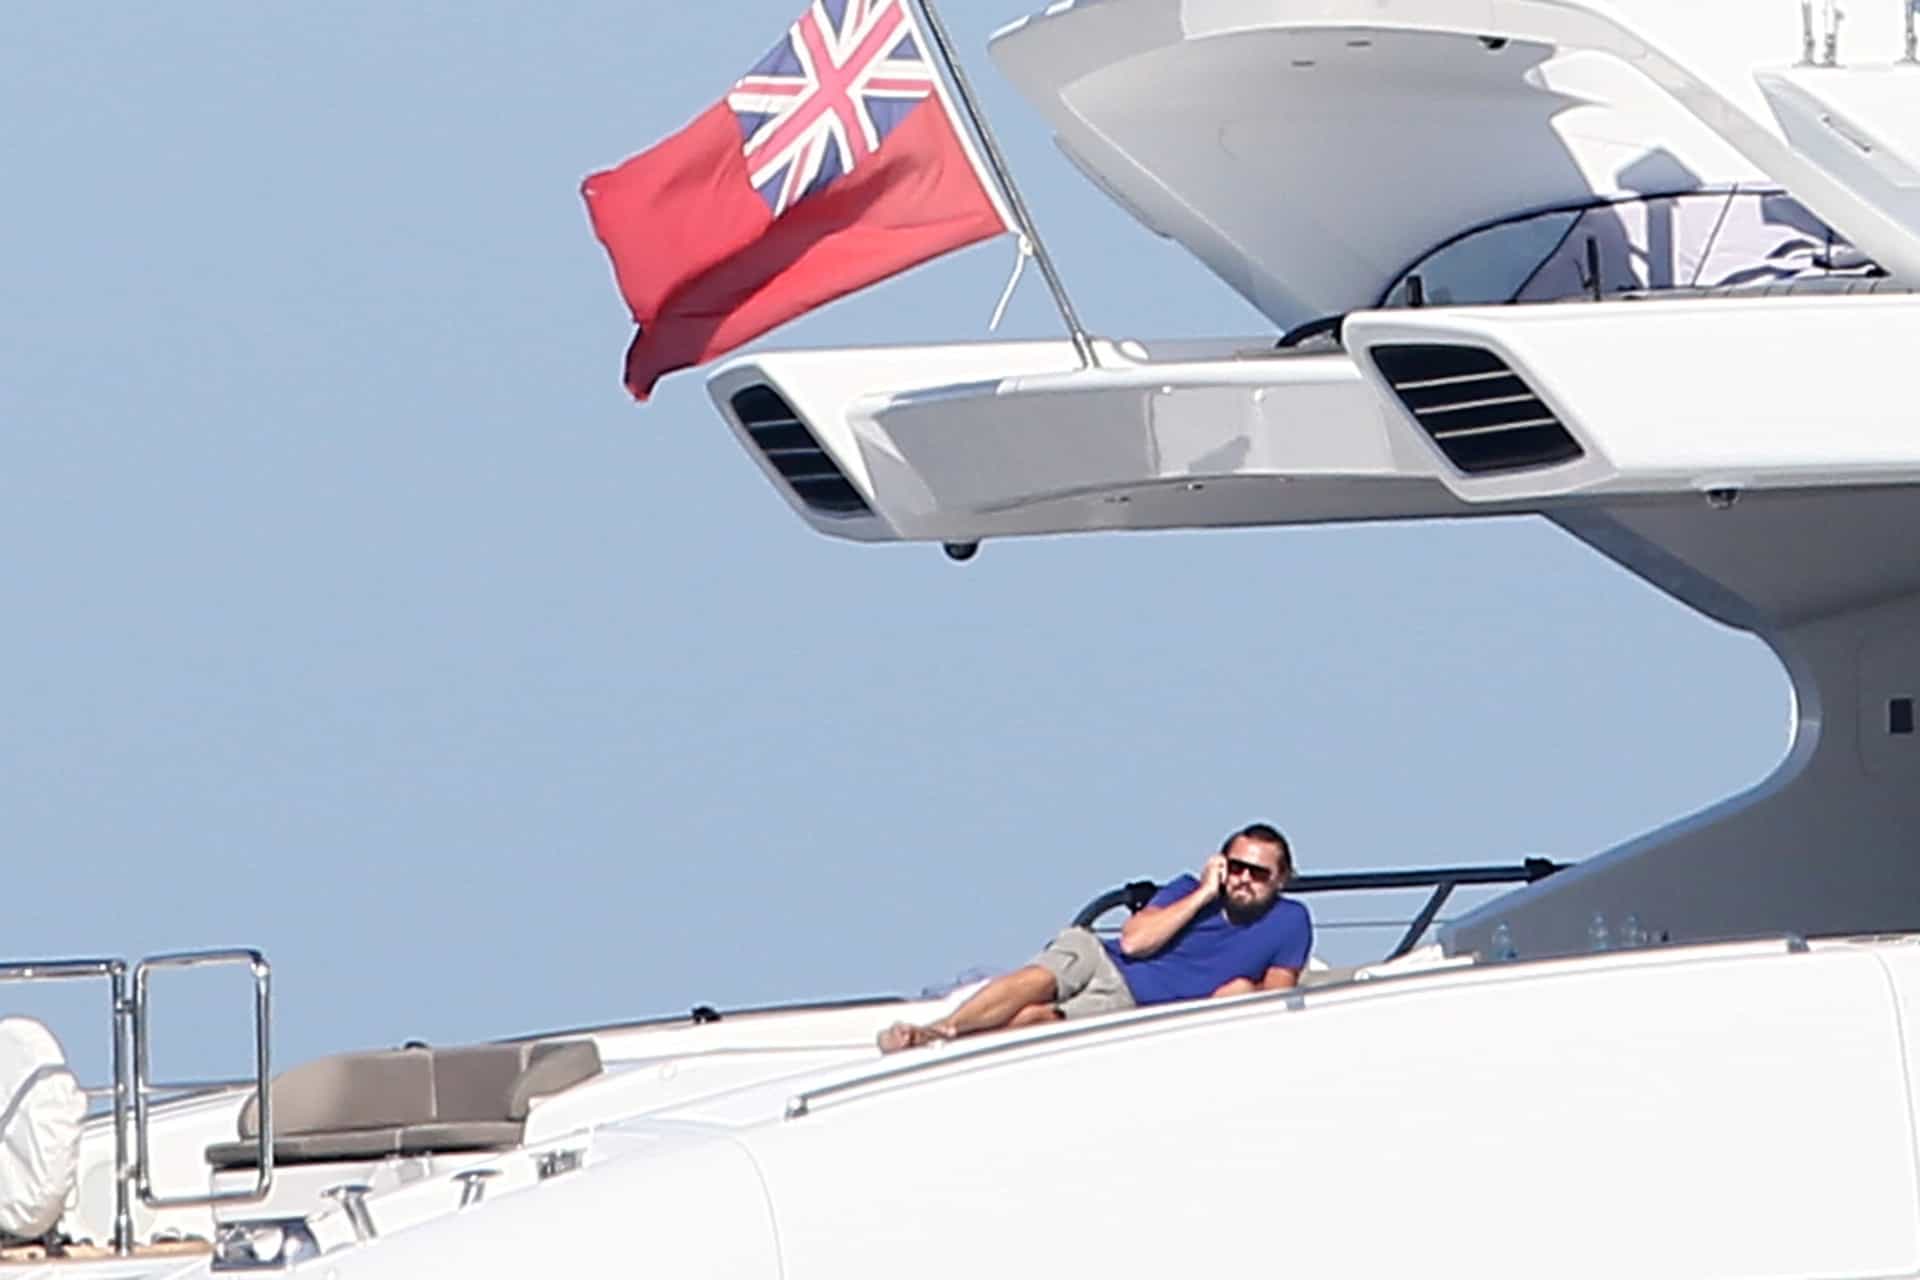 DiCaprio è stato spesso avvistato su enormi yacht, ma non di sua proprietà, preferisce noleggiarli. Una volta ha noleggiato il quinto yacht più grande del mondo, del valore di 678 milioni di dollari, solo per guardare la Coppa del Mondo con i suoi amici a bordo.